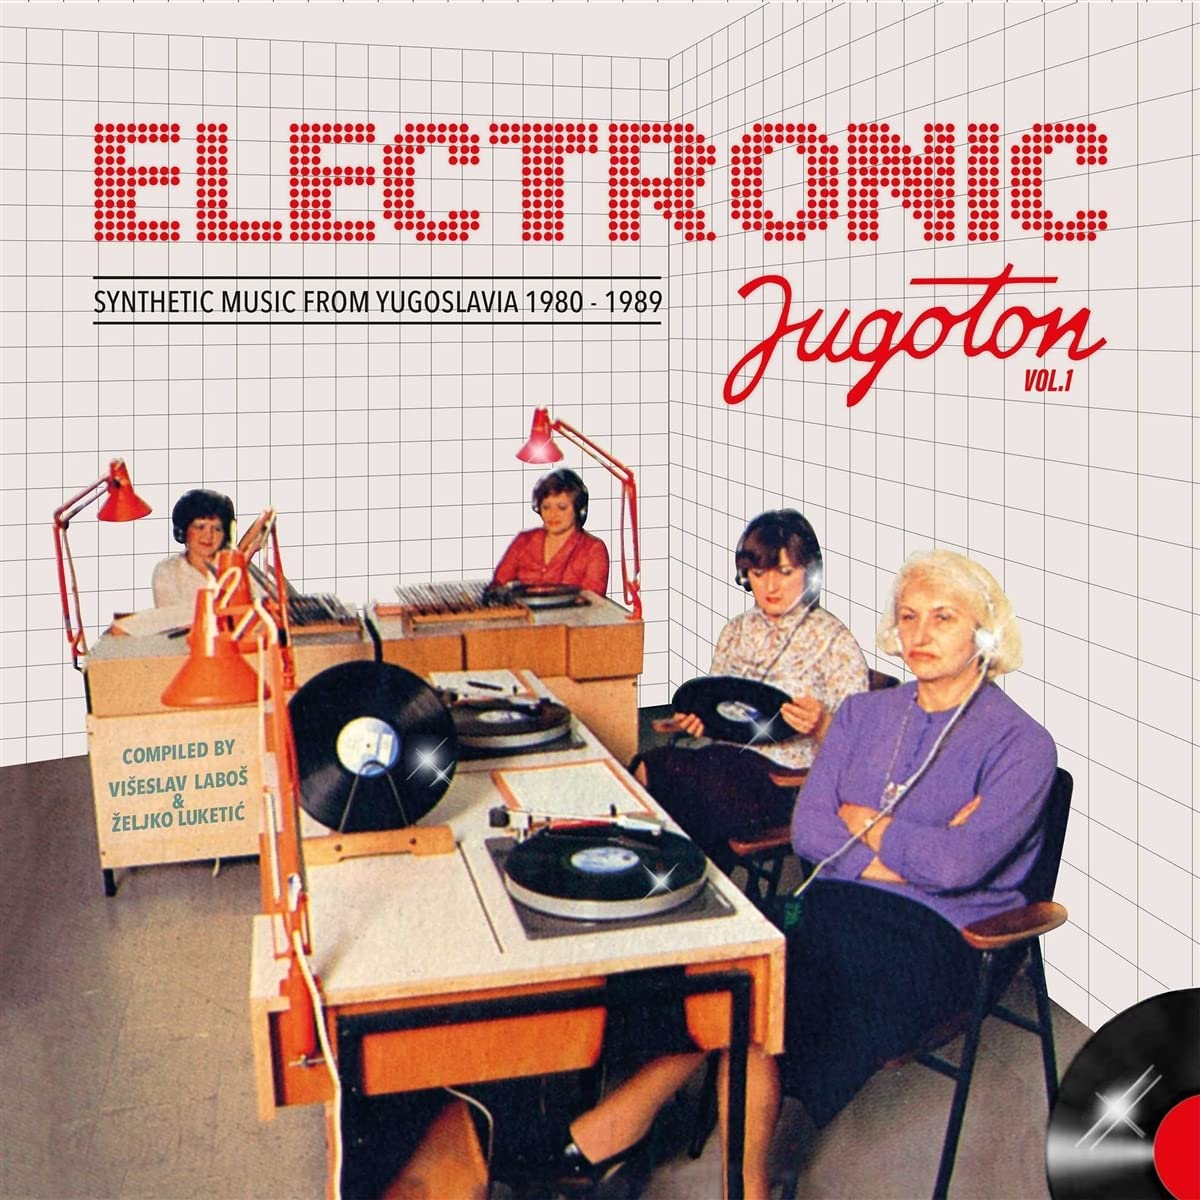 Vinile Electronic Jugoton Vol.1 - Synthetic Music From Yugoslavia 1964-1989 / Various (2 Lp) NUOVO SIGILLATO, EDIZIONE DEL 04/02/2022 SUBITO DISPONIBILE